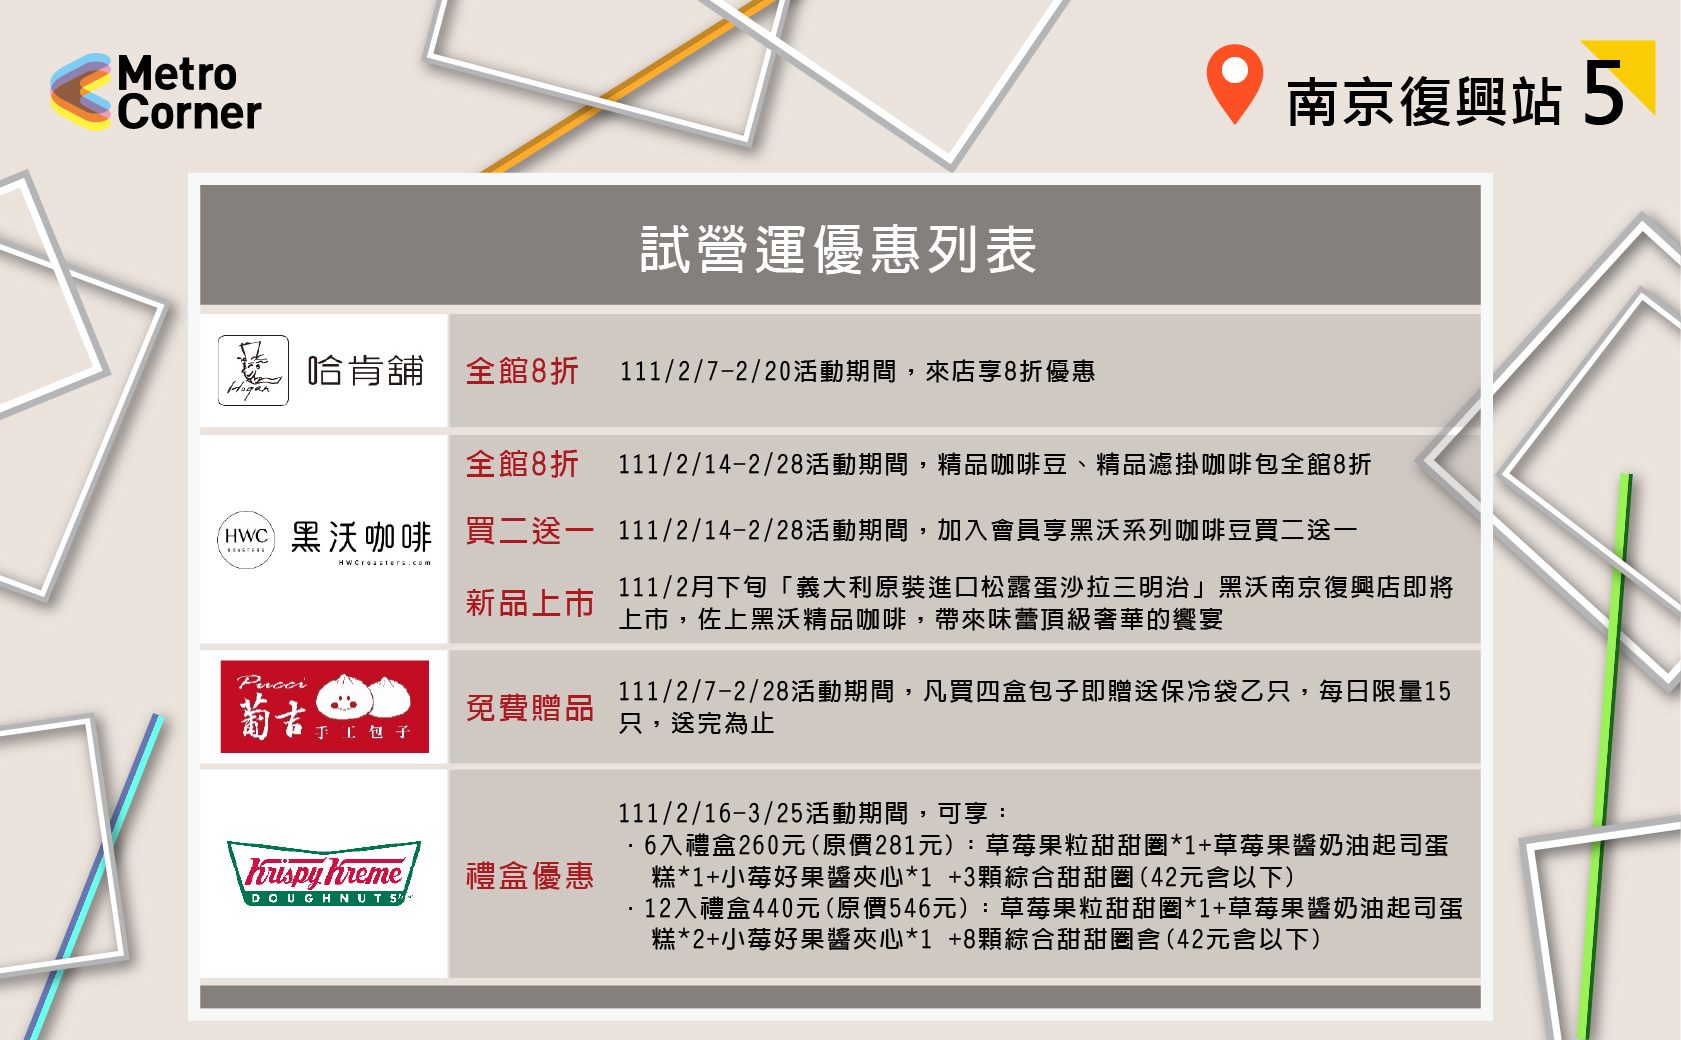 Beberapa kegiatan promosi yang tersedia. Sumber: Pemerintah Kota Taipei